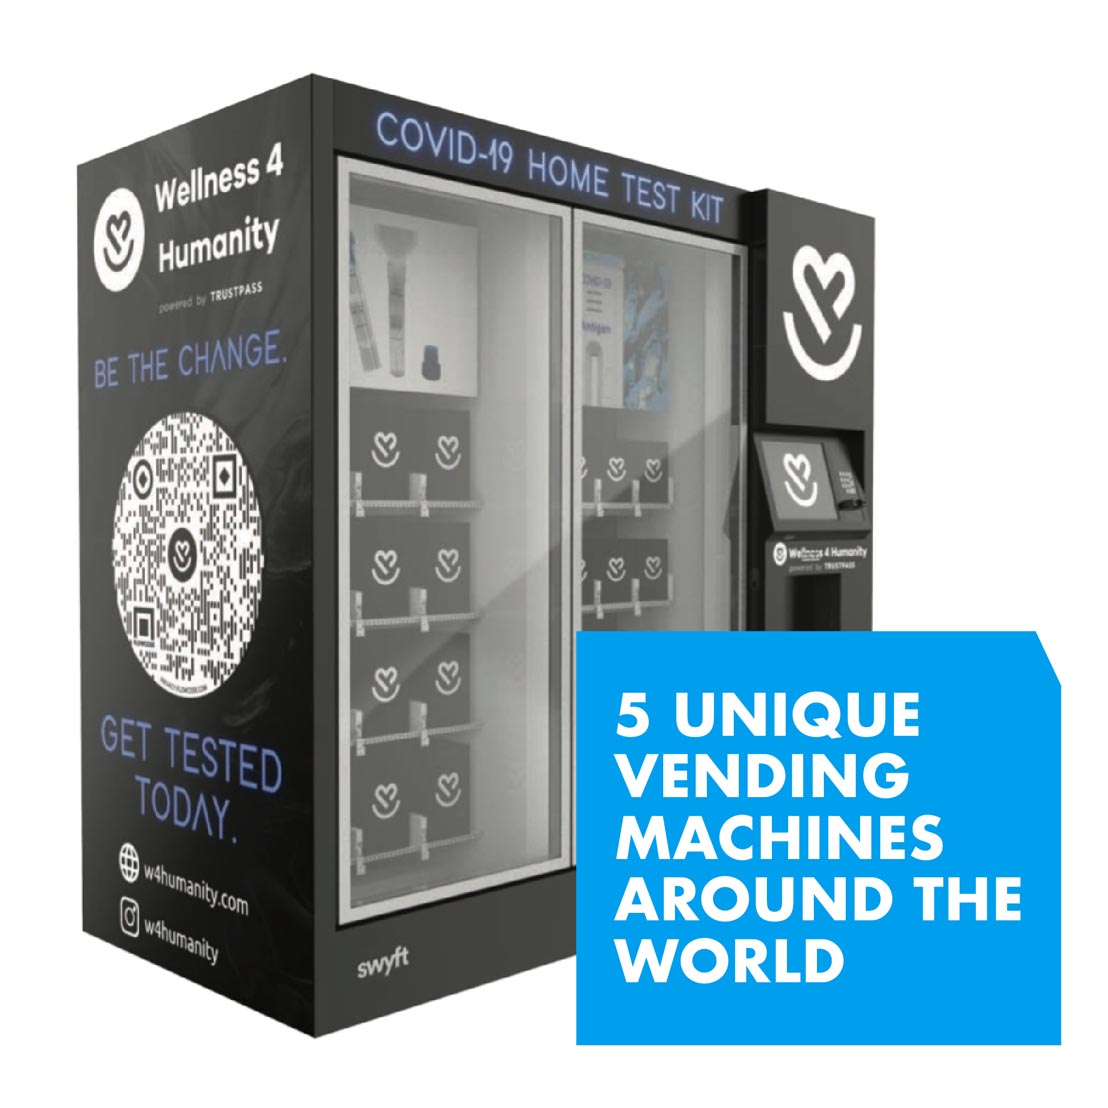 5 Unique Vending Machines Around the World